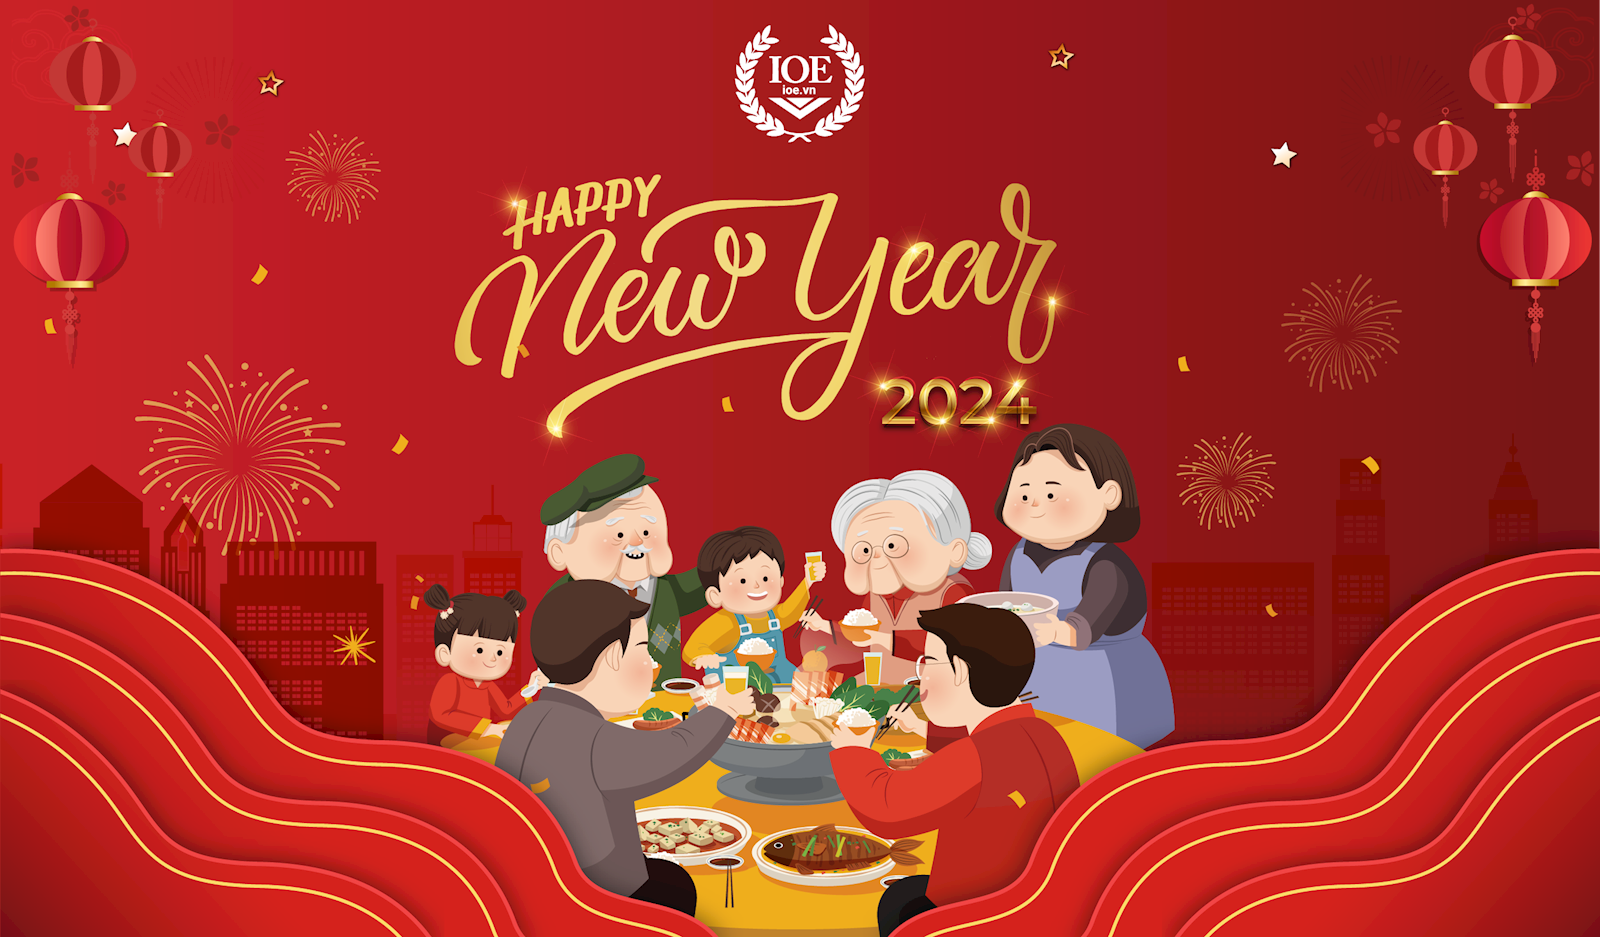 BTC IOE: Chúc mừng năm mới - Xuân Giáp Thìn 2024!